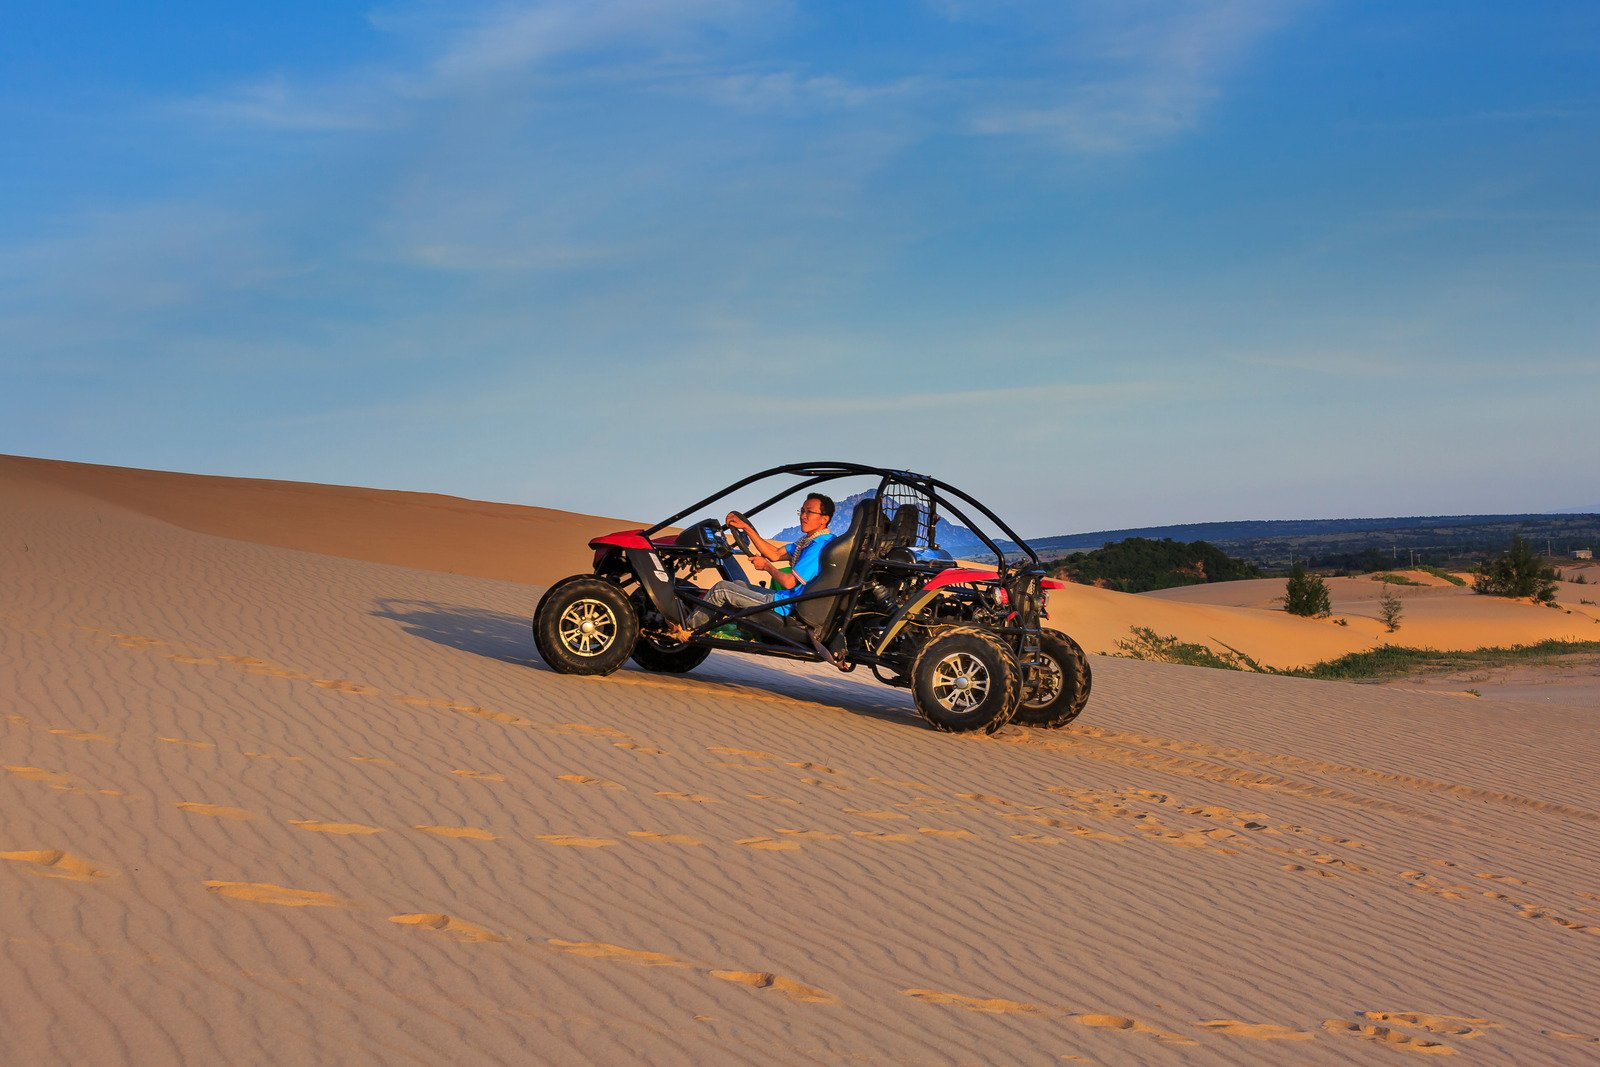 An ATV on sand dunes